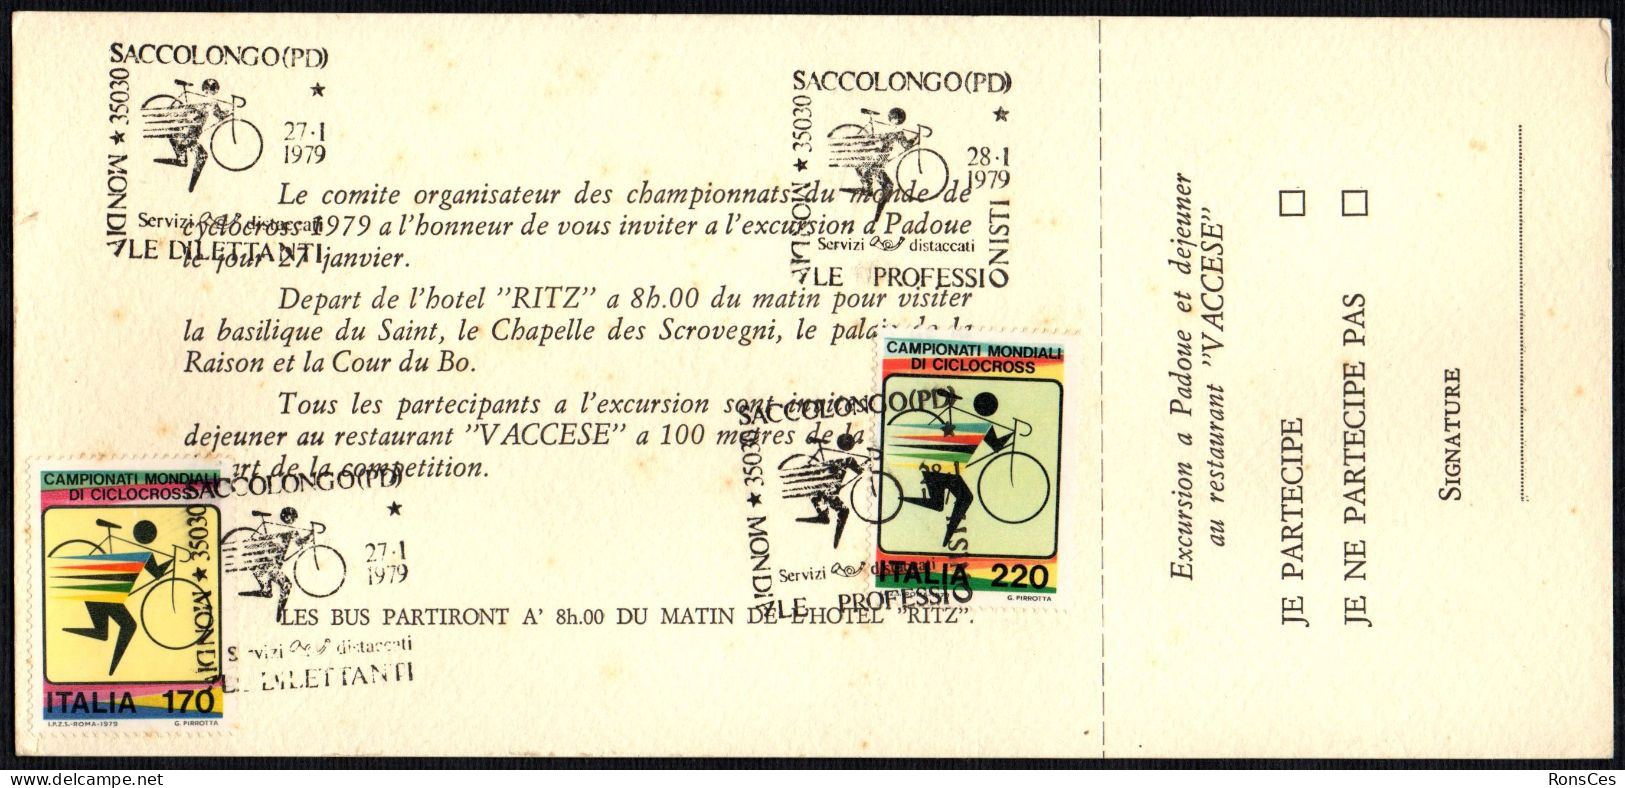 CYCLING - ITALIA SACCOLONGO (PD) 1979 - CAMPIONATO MONDIALE CICLOCROSS - 2 ANNULLI PROFESSIONISTI / DILETTANTI - A - Cycling